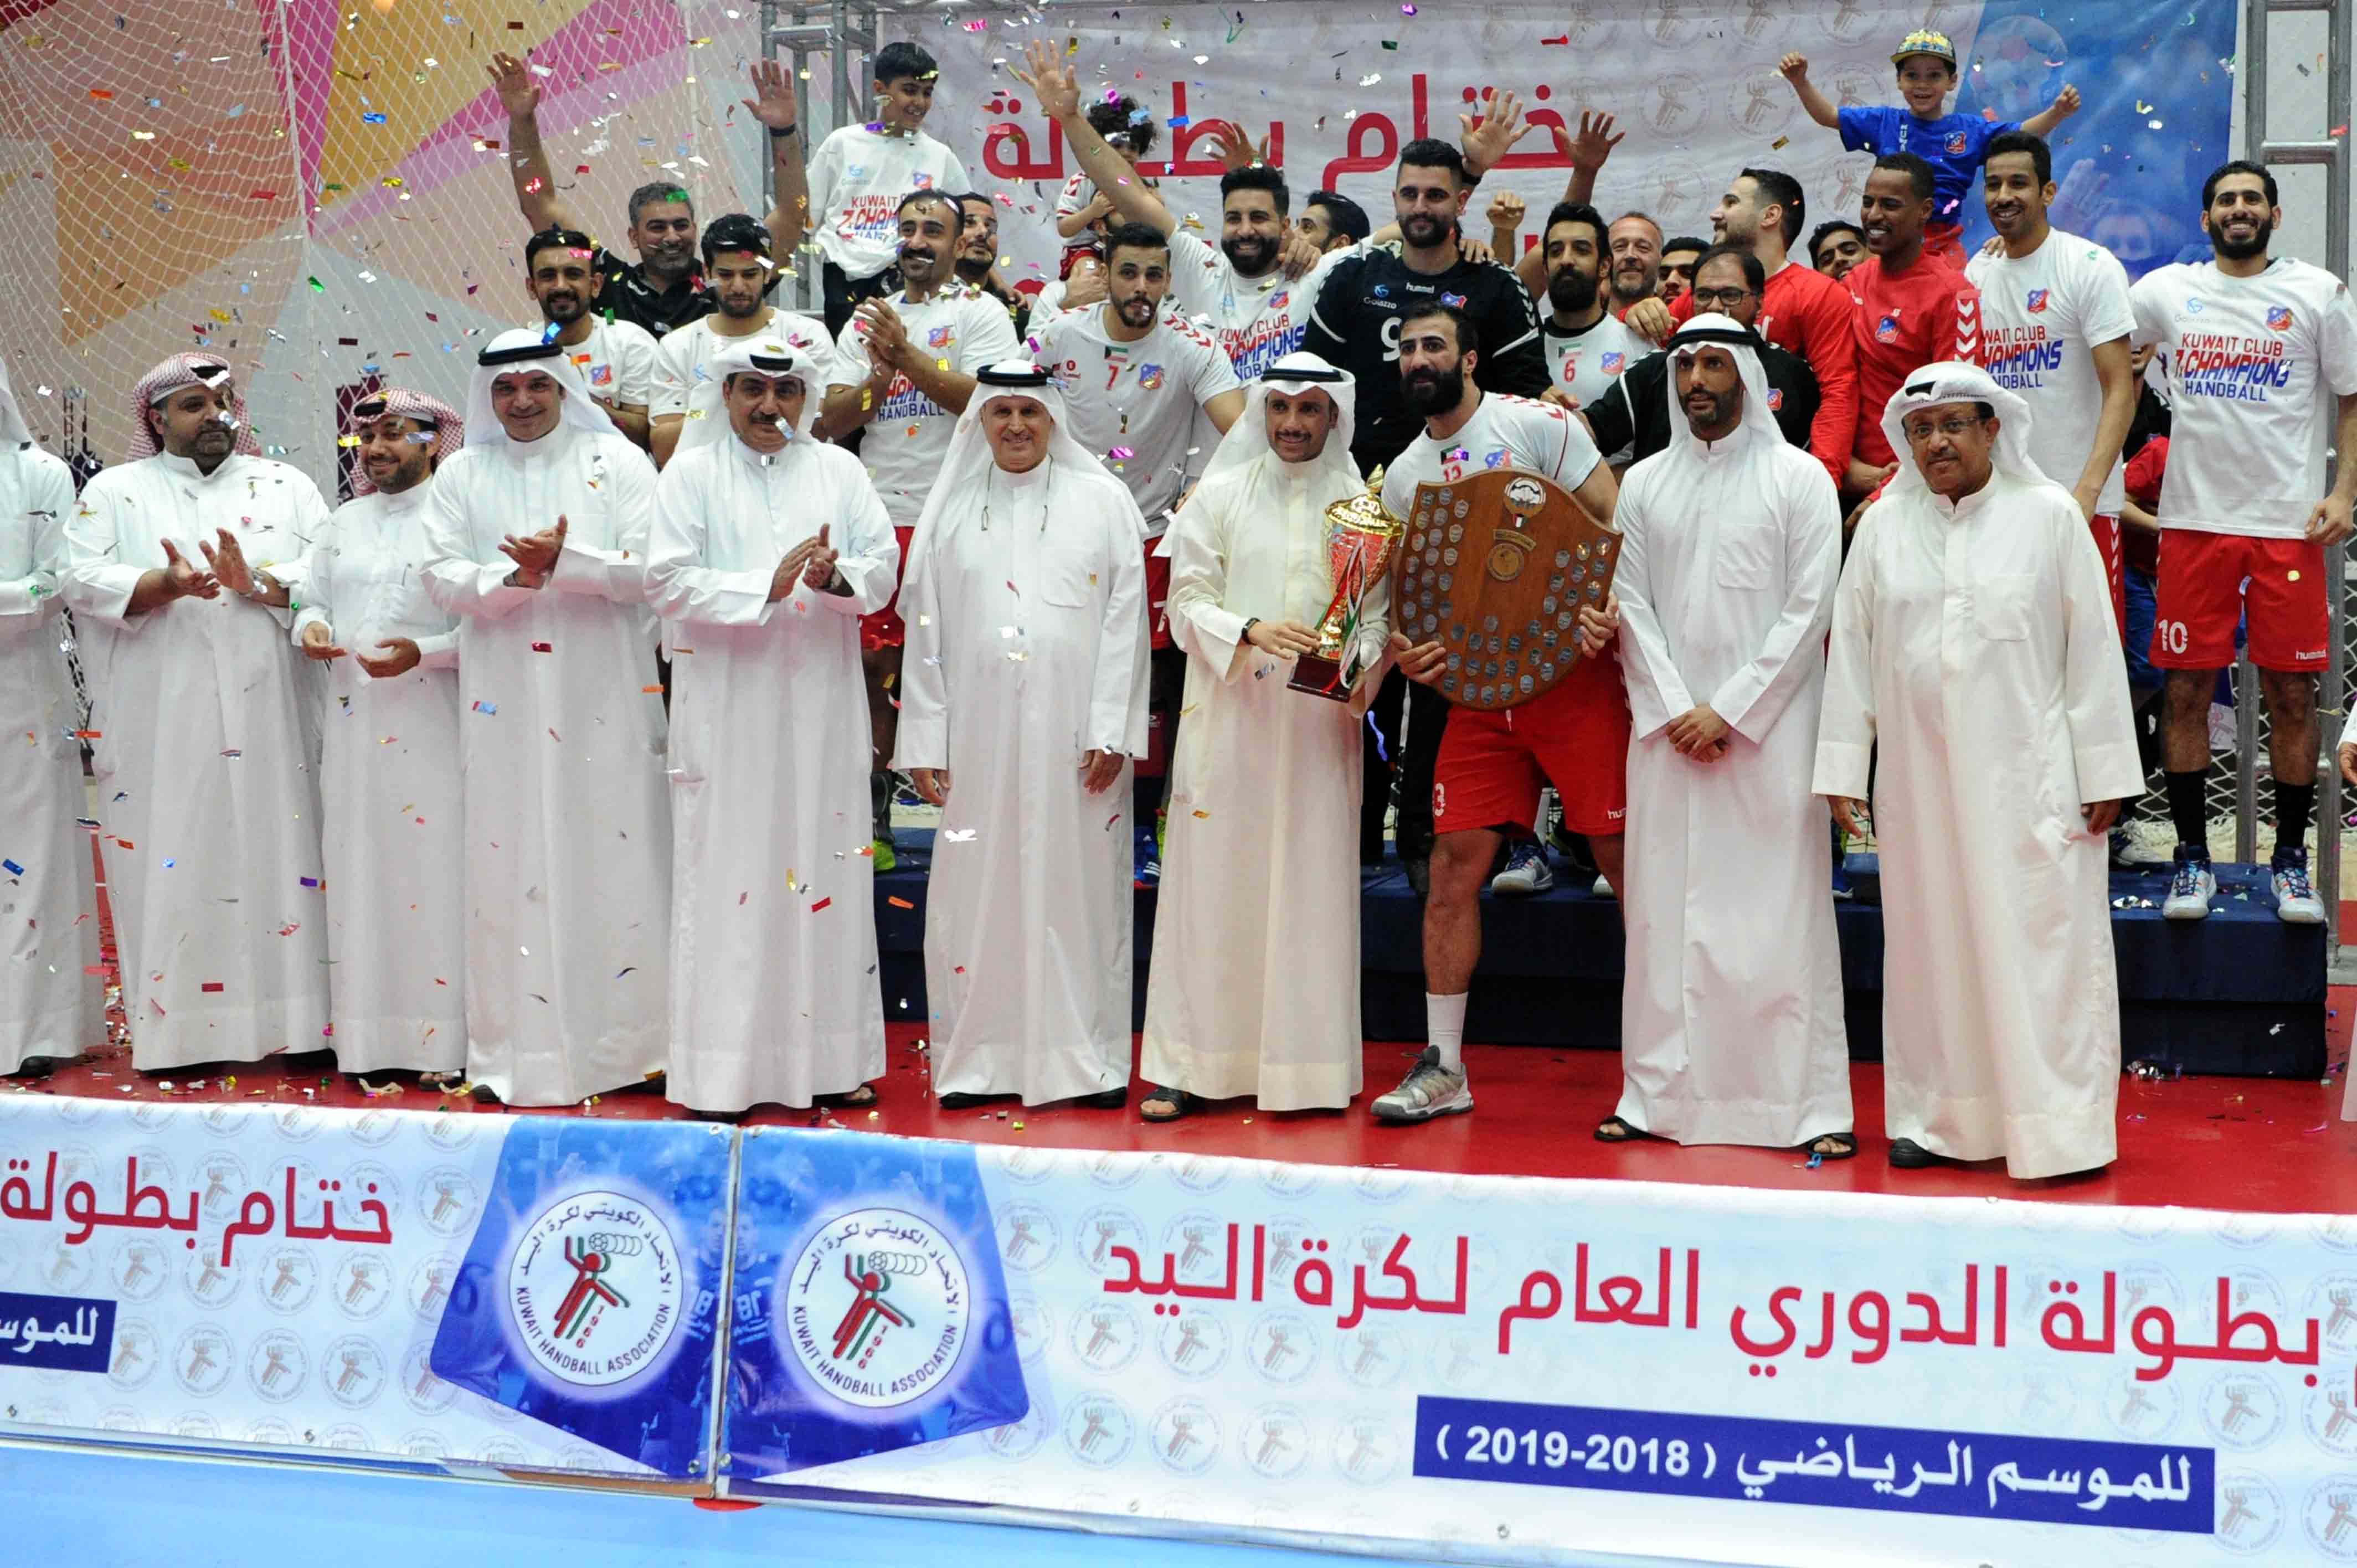 نادي الكويت يتوج بطلا لمسابقة الدوري الكويتي الممتاز لكرة اليد للمرة التاسعة في تاريخه